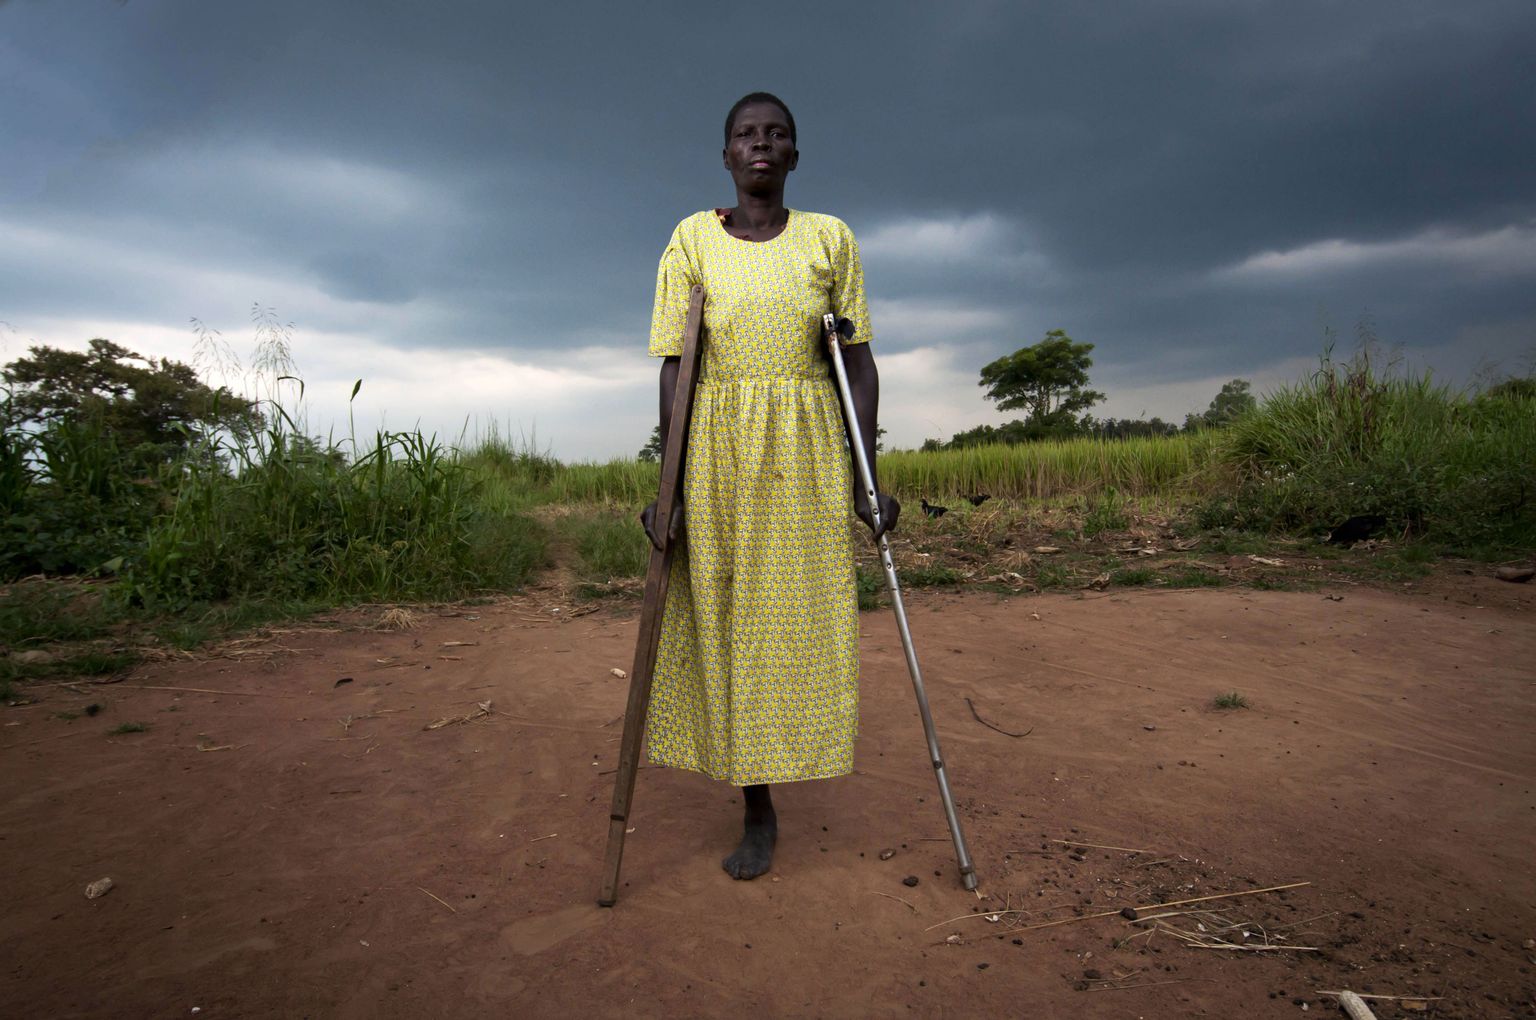 Praeguseks 50 aastat vana ugandalanna Filda Adoch kaotas maamiini otsas jala 14 aasta eest.